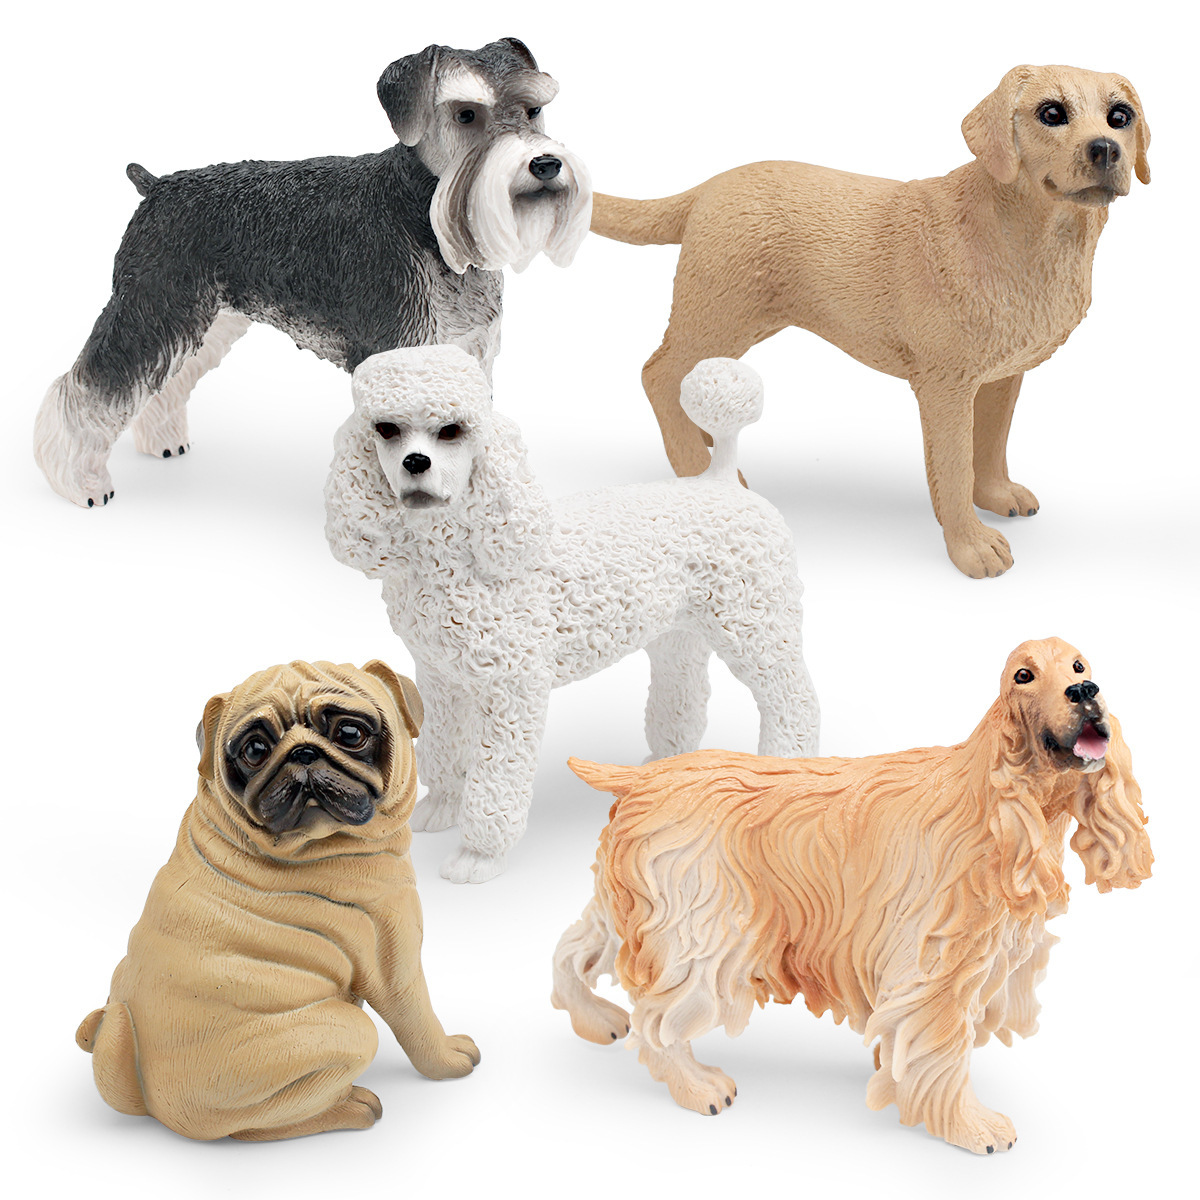 仿真宠物狗狗动物模型八哥犬雪纳瑞贵宾犬拉布拉多美国可卡犬摆件